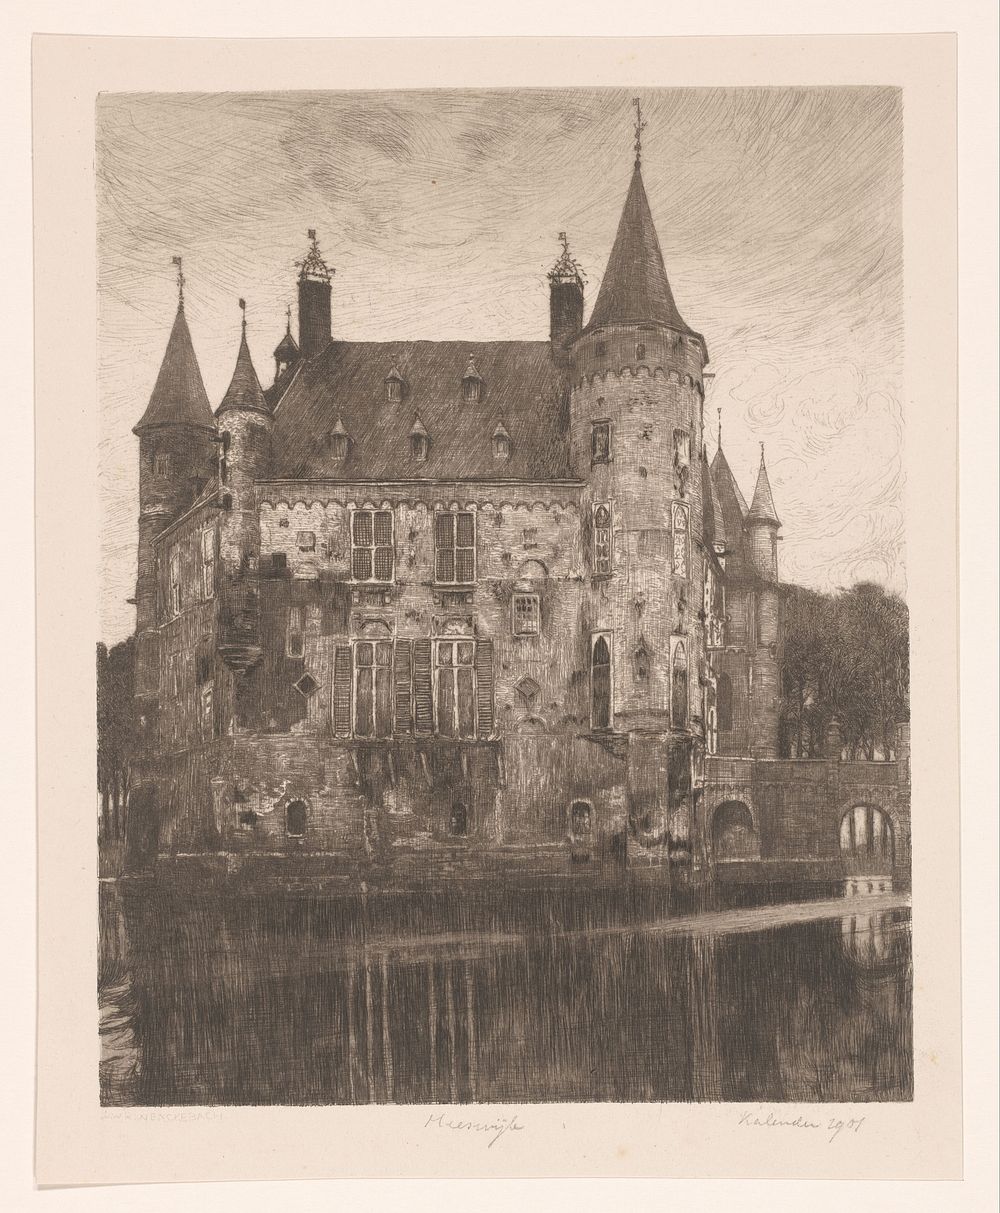 Kasteel Heeswijk (1901) by Willem Wenckebach and Roeloffzen and Hübner